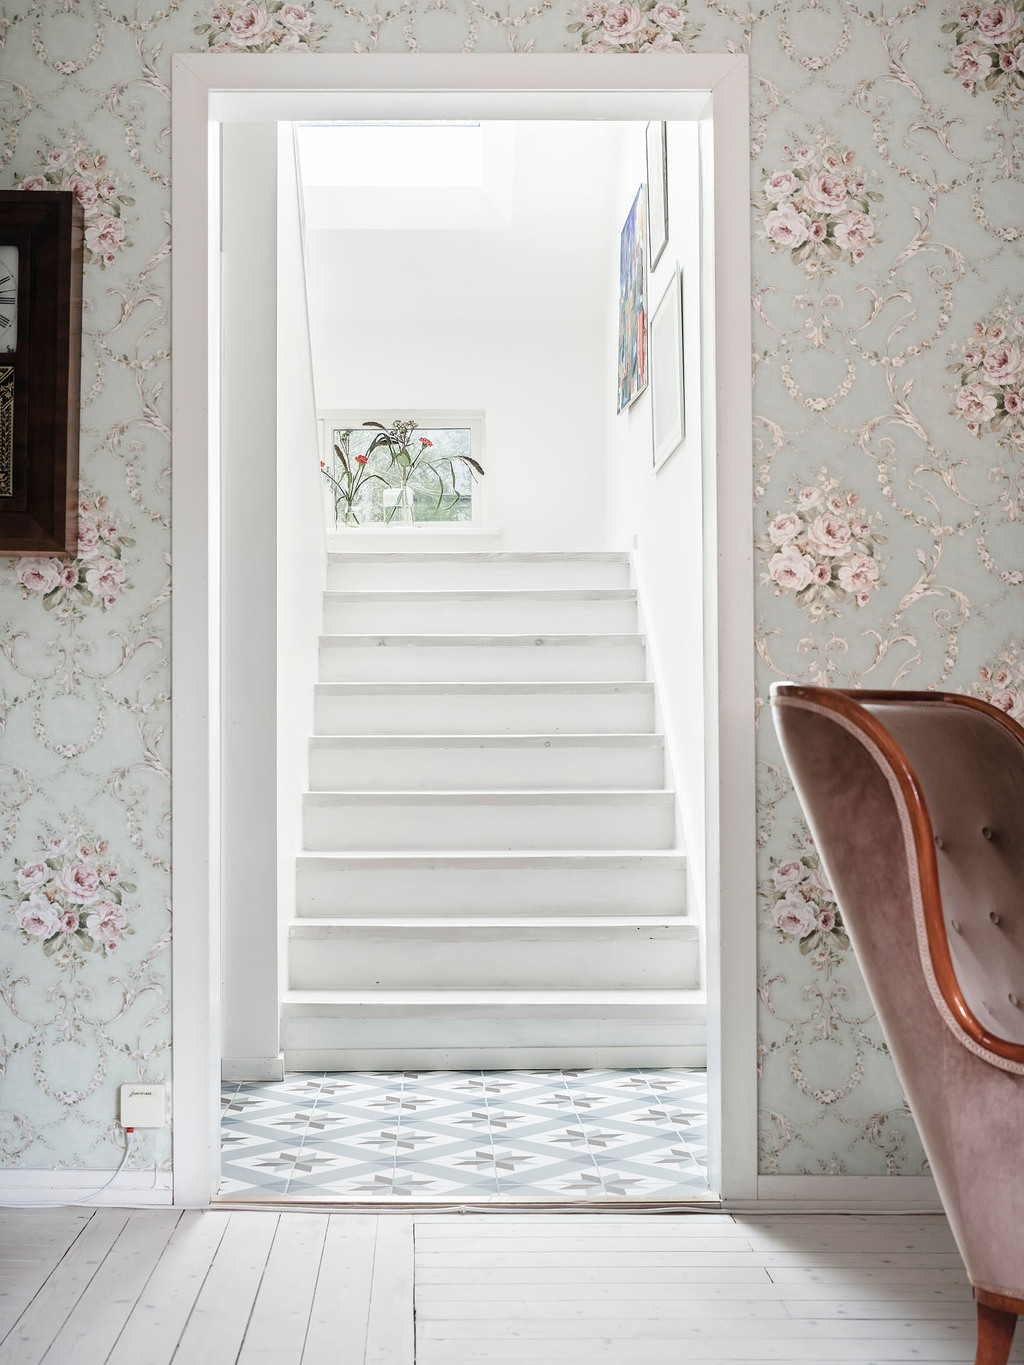 Cầu thang dẫn lối lên tầng gác mái được trang trí với những bức tranh treo tường cùng vài lọ hoa thủy tinh đẹp mắt trên bệ cửa sổ.